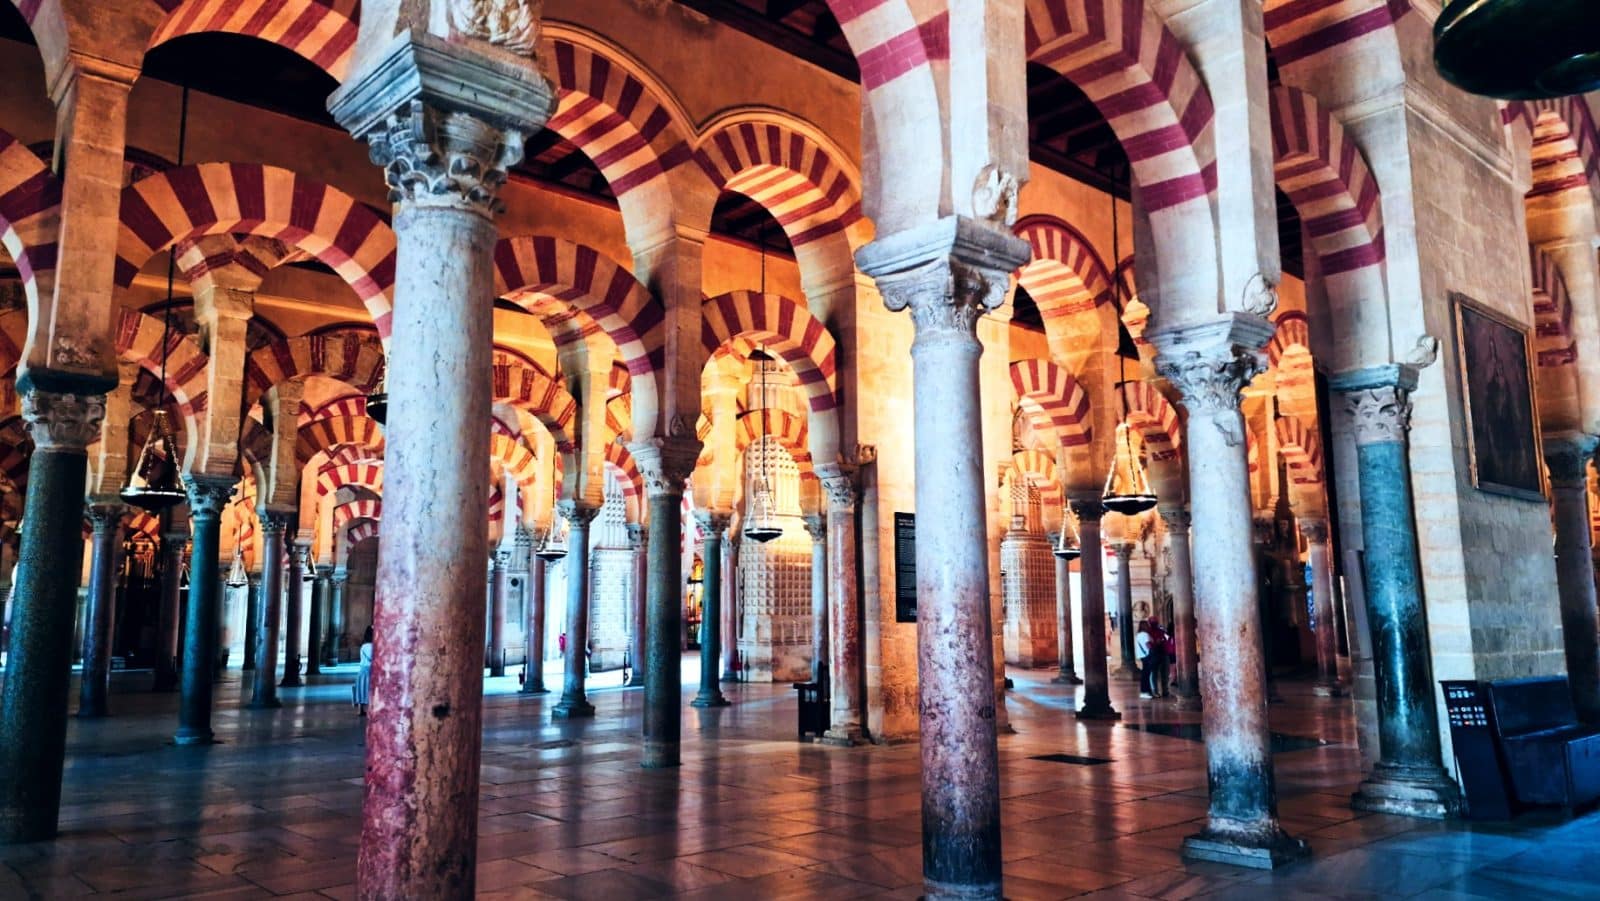 La Mezquita-Catedral de Córdoba es la atracción más importante de la ciudad andaluza